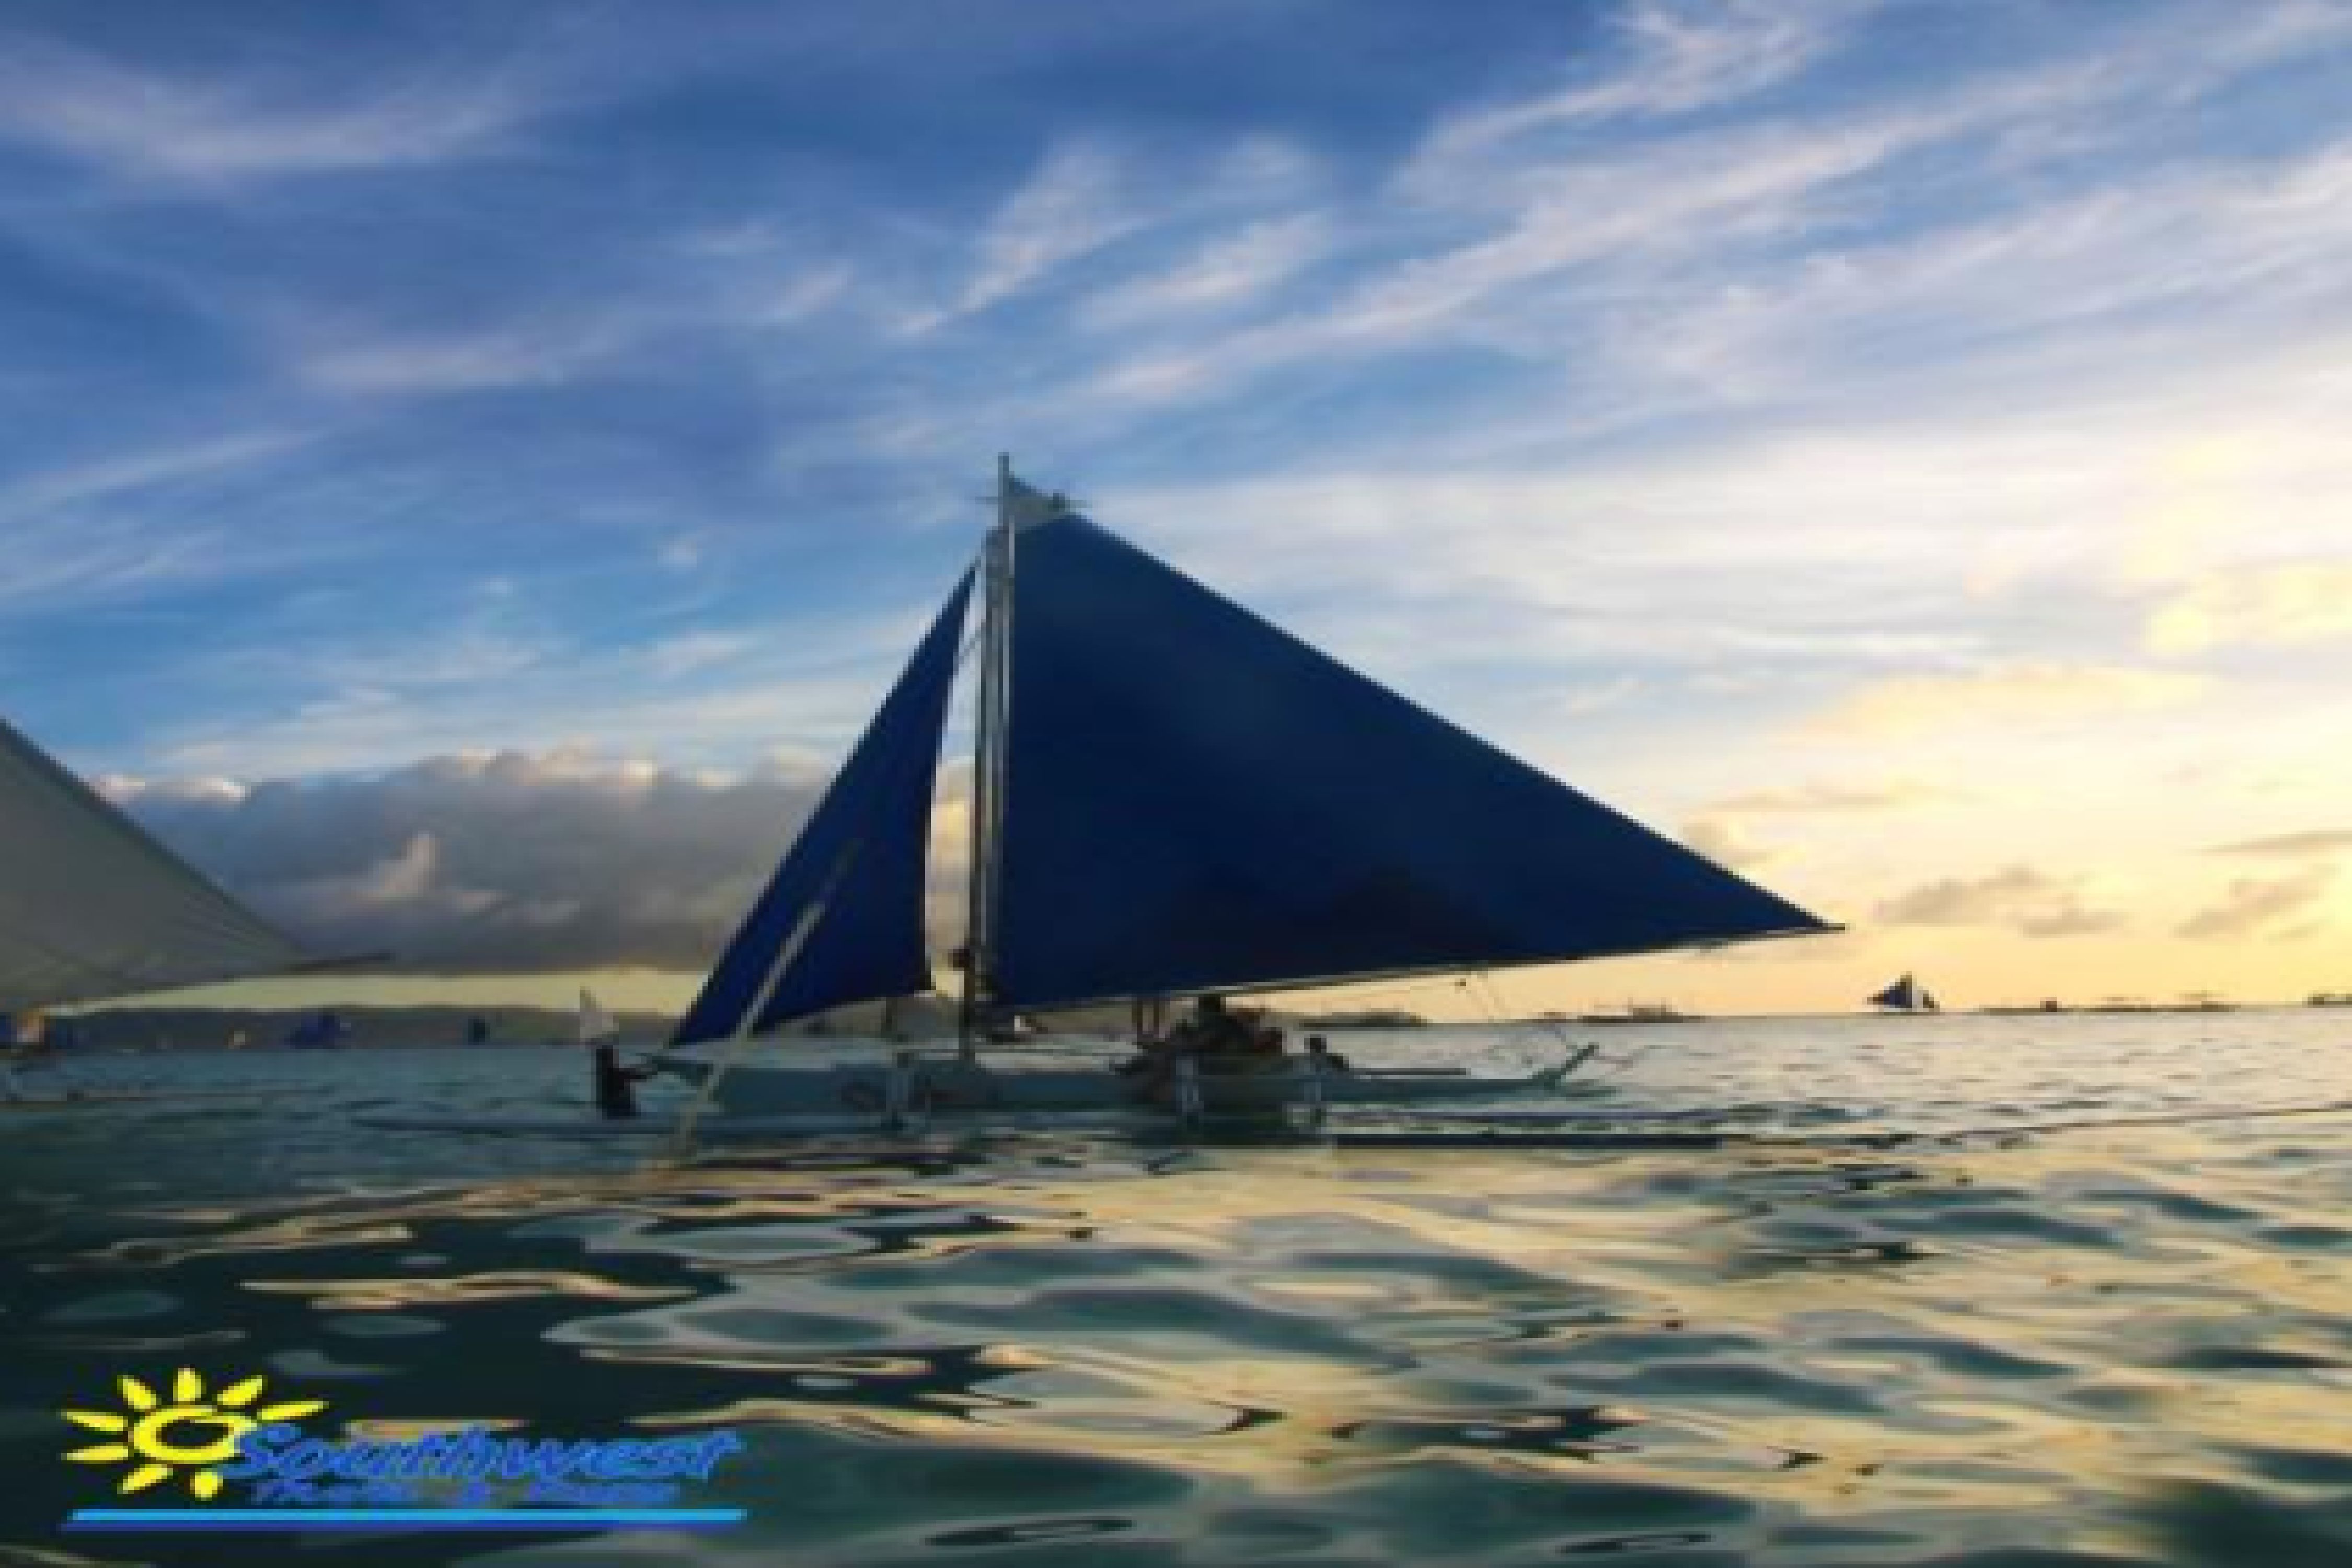 Paraw Sailing